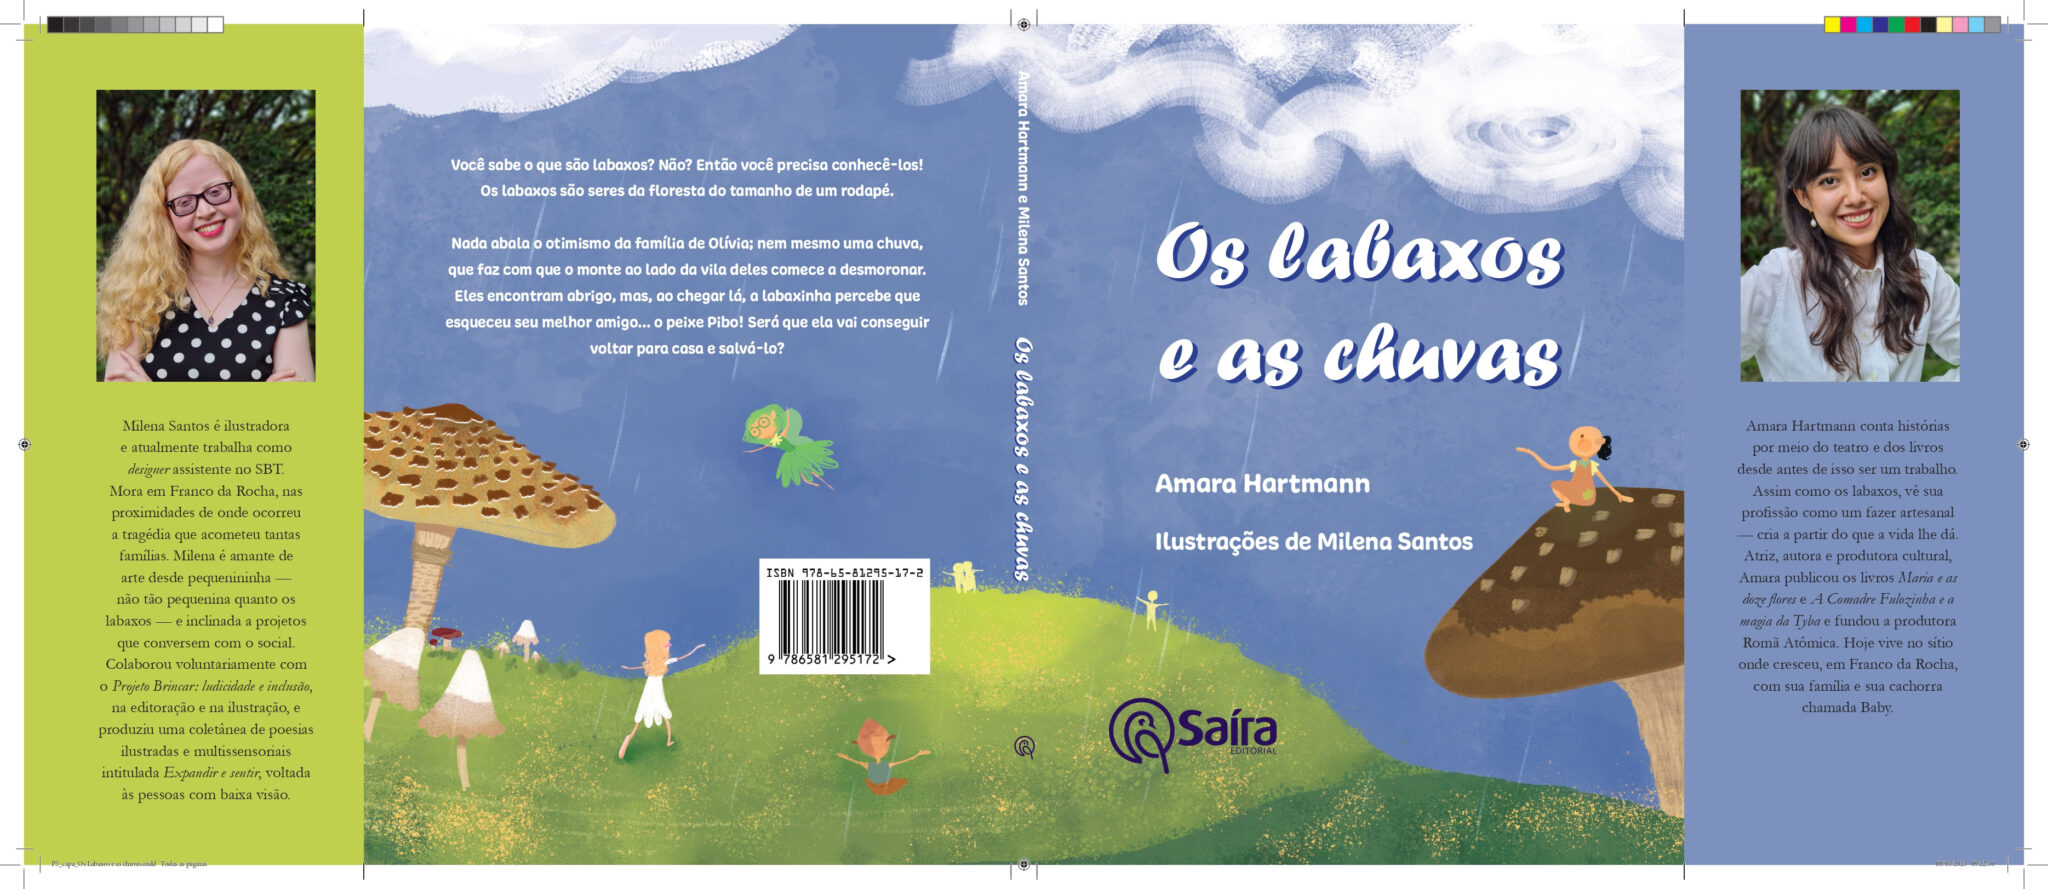 Livro infantil traz história lúdica dentro da realidade de famílias que sofrem pela chuva